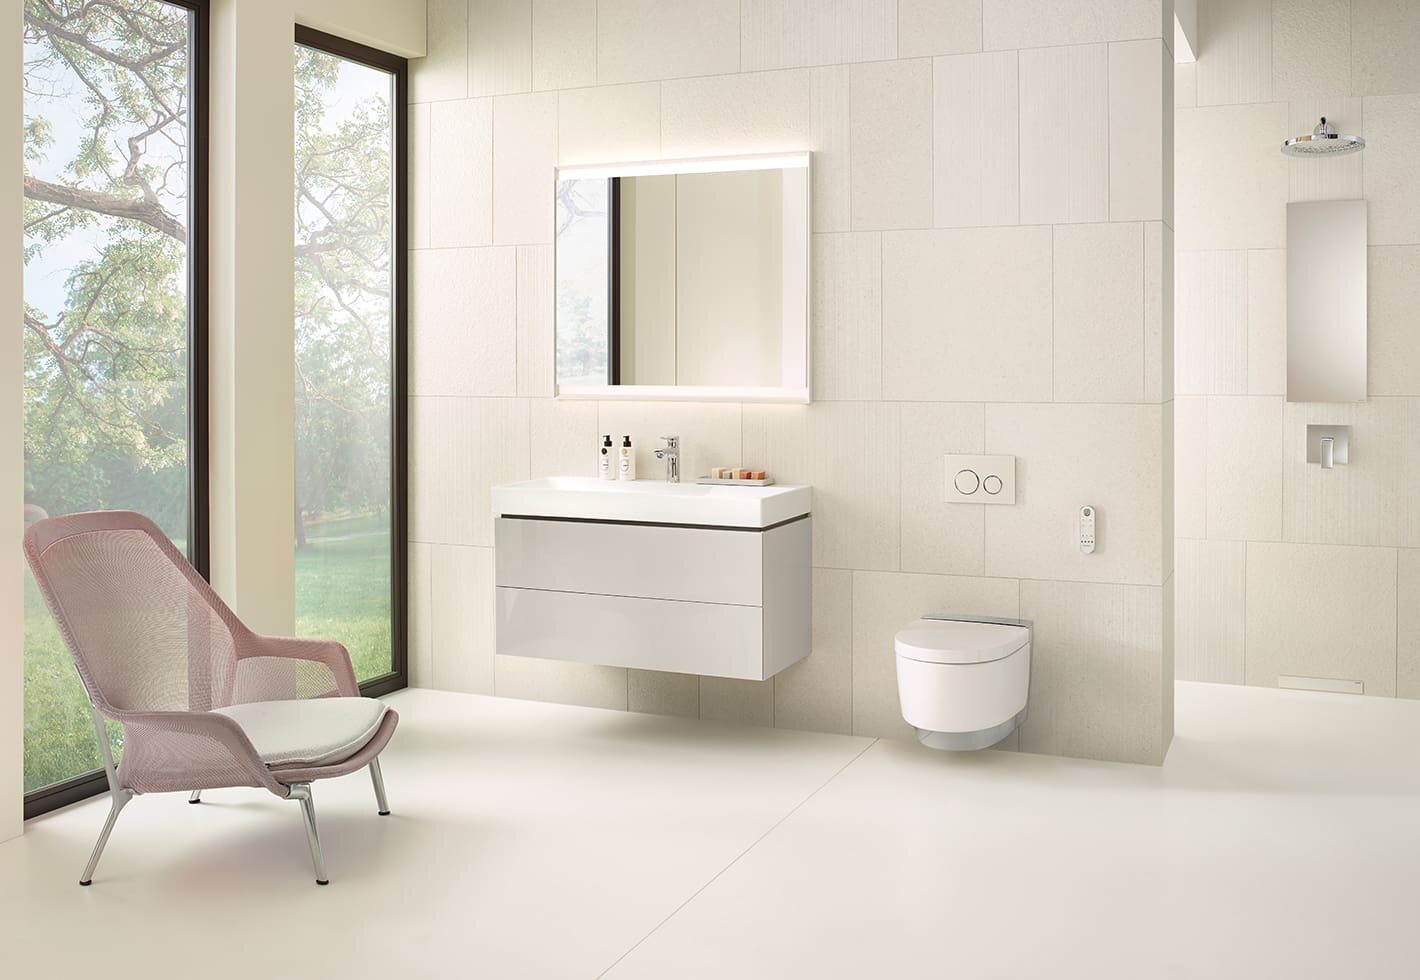 Modernes, hell eingerichtetes Bad mit einem Dusch-WC von Geberit